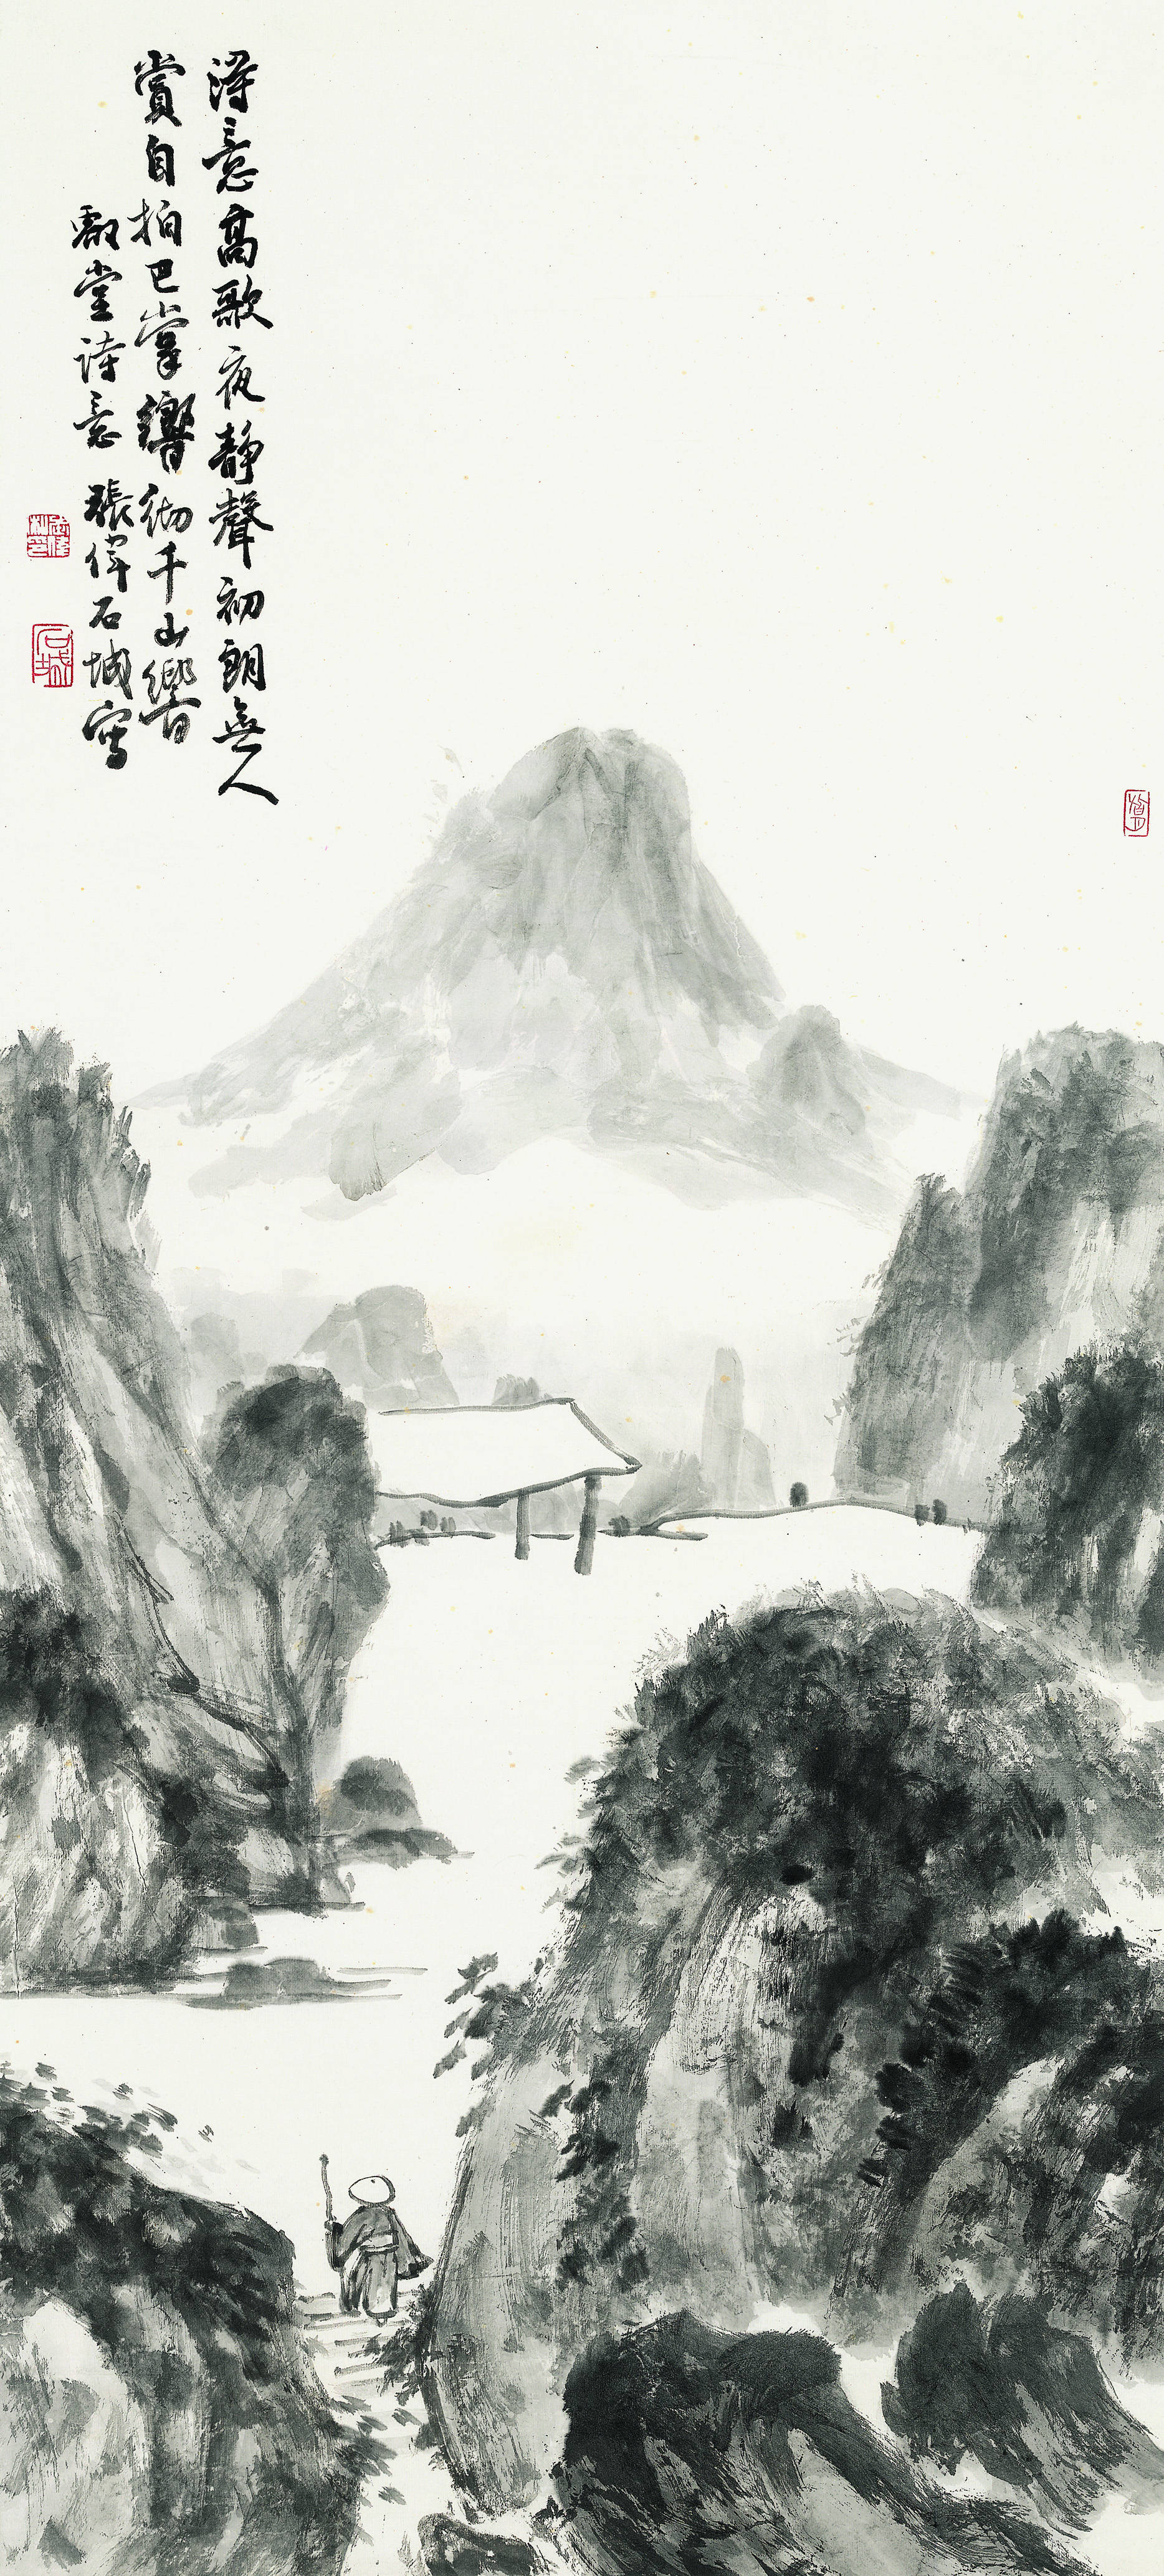 张伟石城:亚明先生总结中国画技法《明月夜》作品欣赏